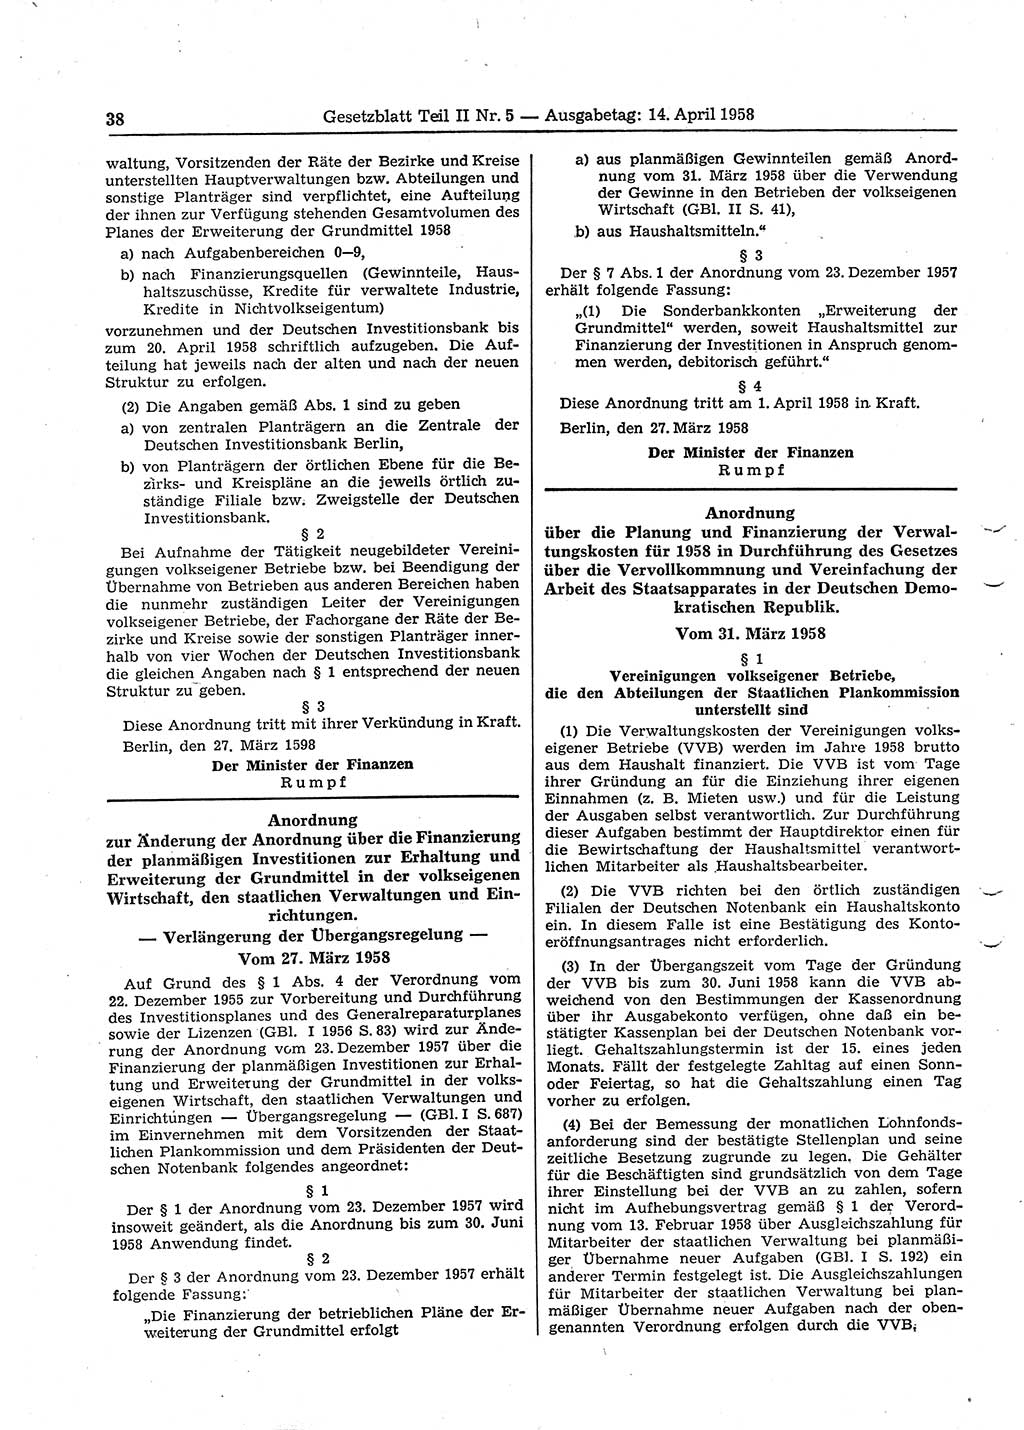 Gesetzblatt (GBl.) der Deutschen Demokratischen Republik (DDR) Teil ⅠⅠ 1958, Seite 38 (GBl. DDR ⅠⅠ 1958, S. 38)